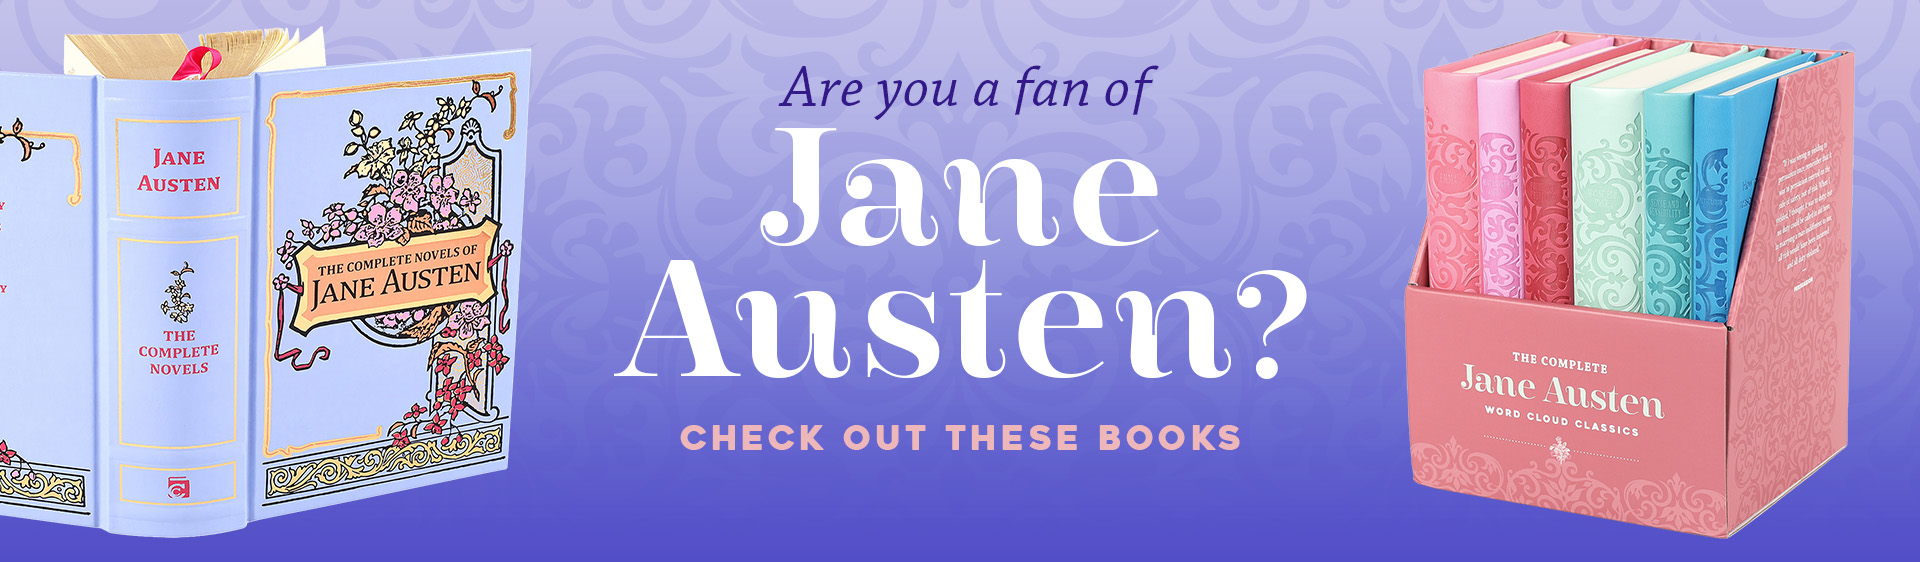 Jane Austen Banner